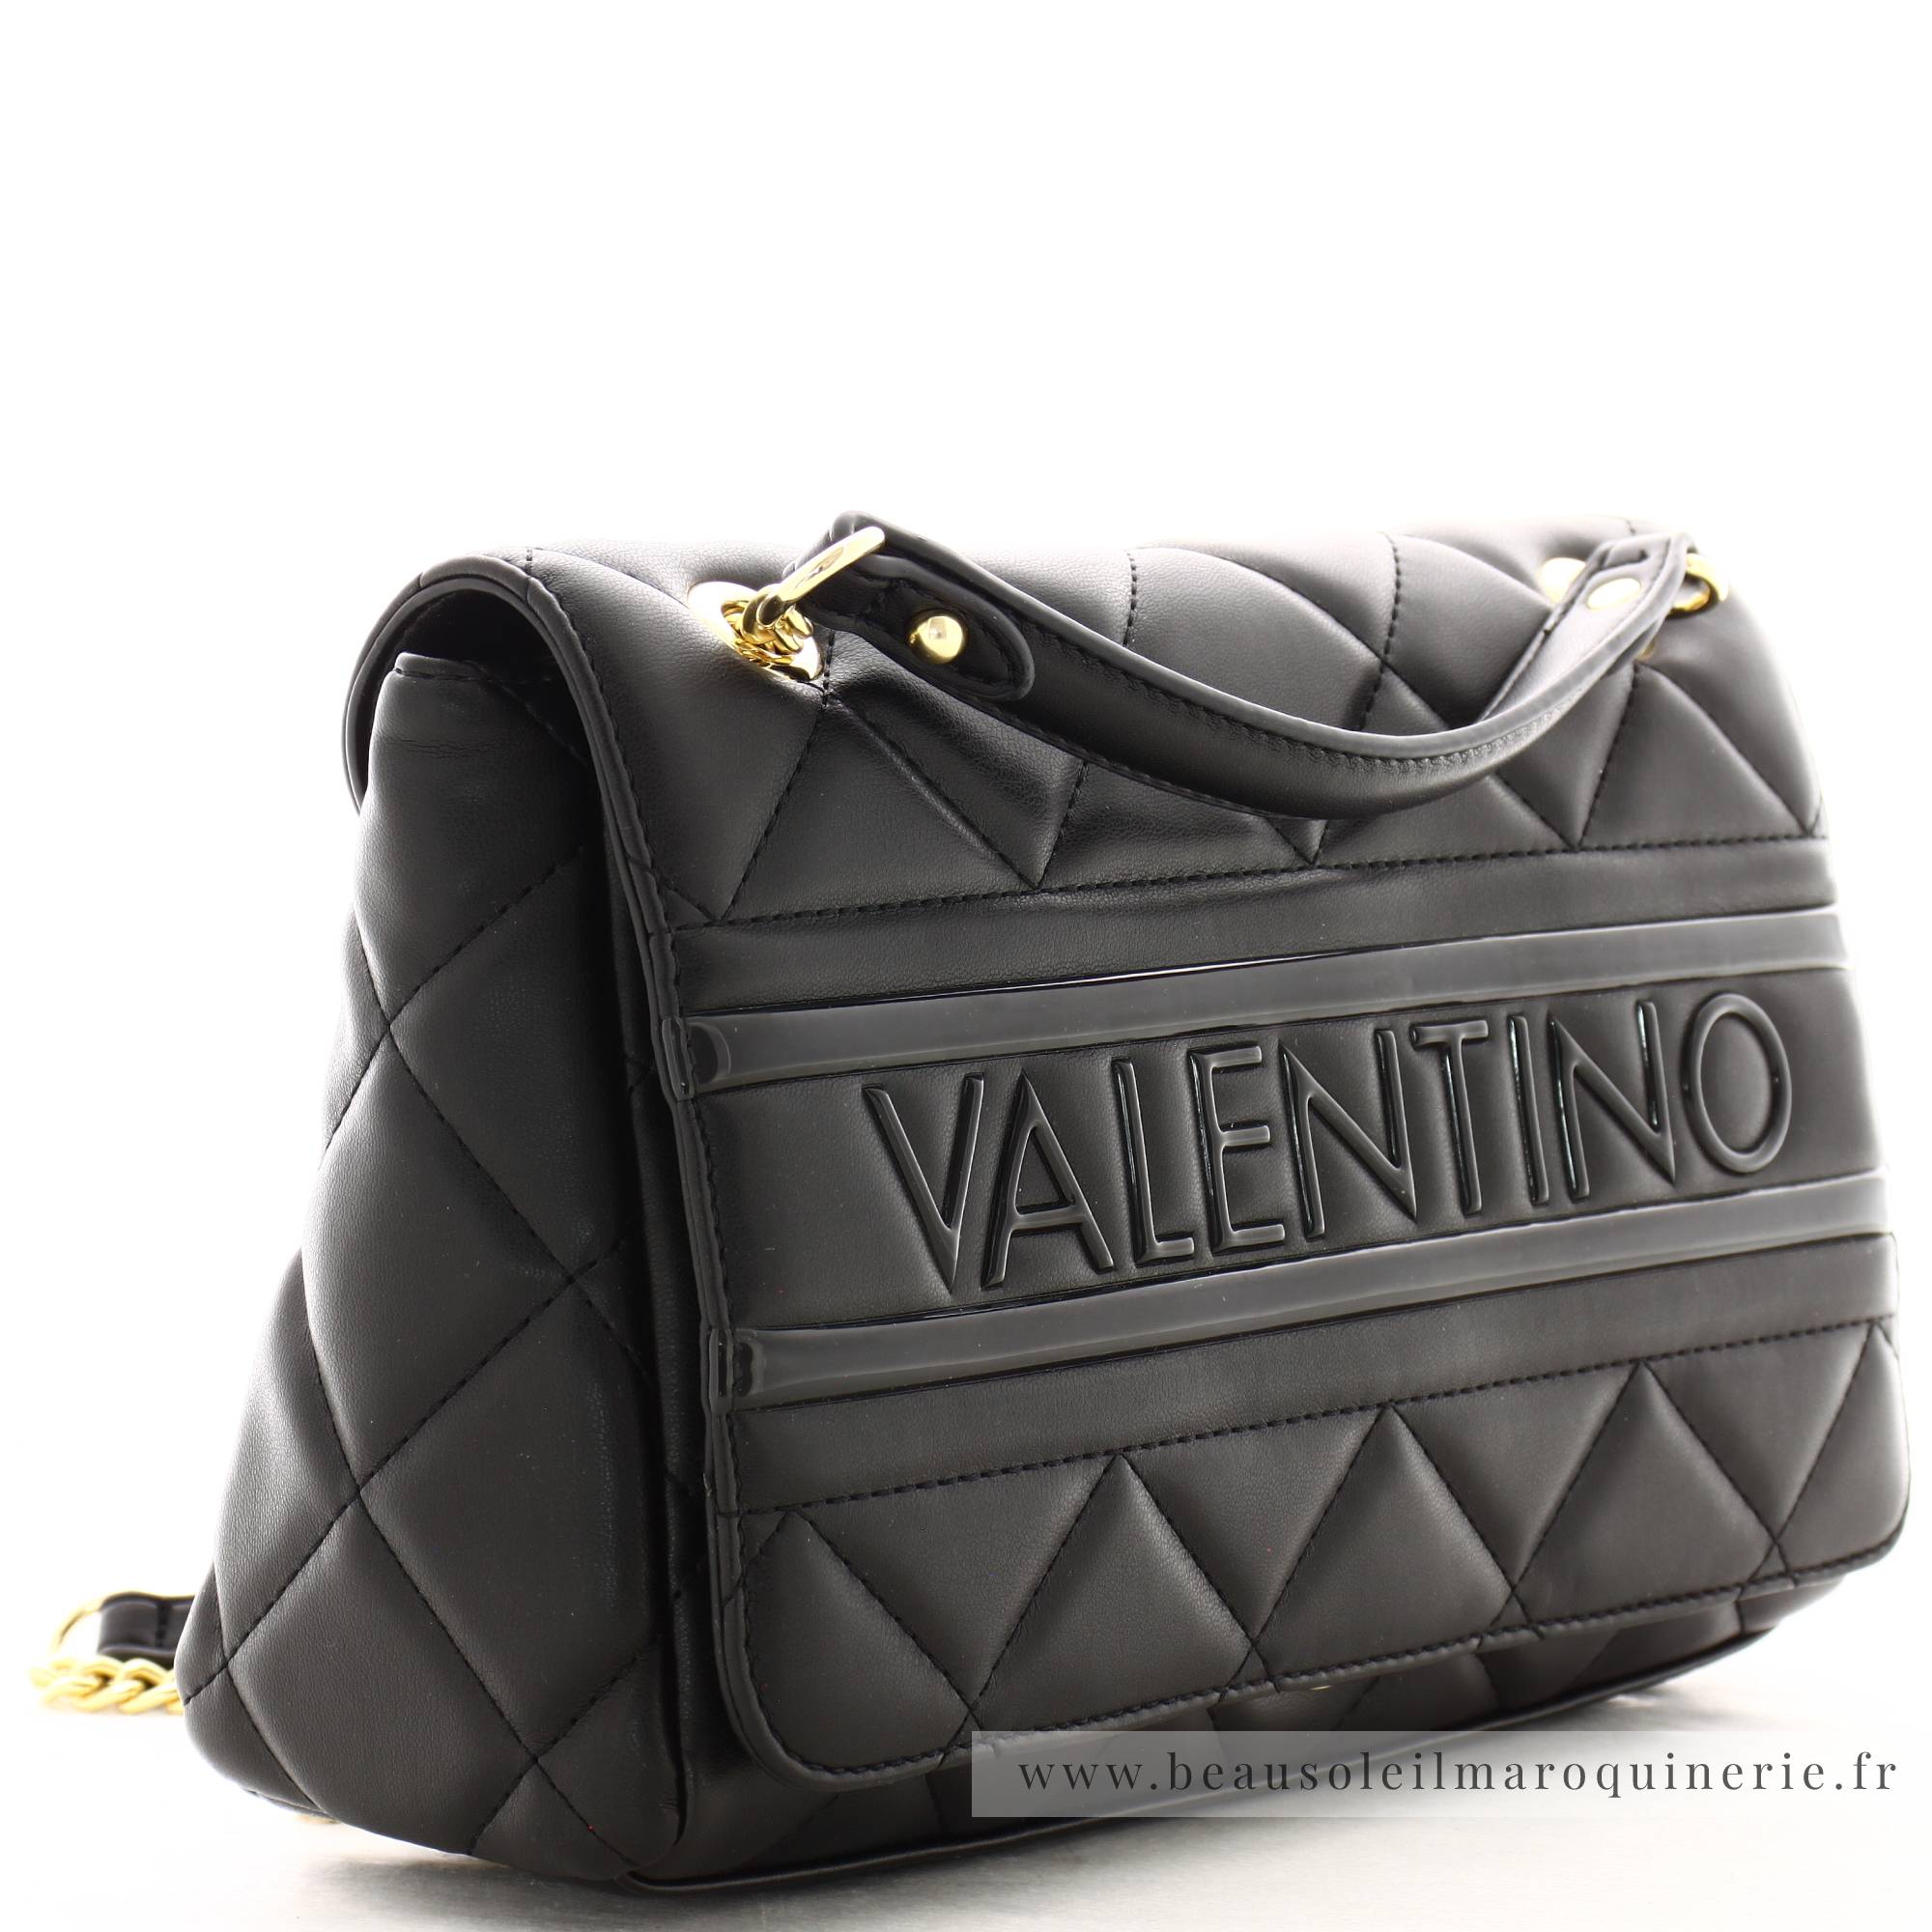 Sac porté épaule Valentino Mario VBS51O05 001 couleur noir vue de profil